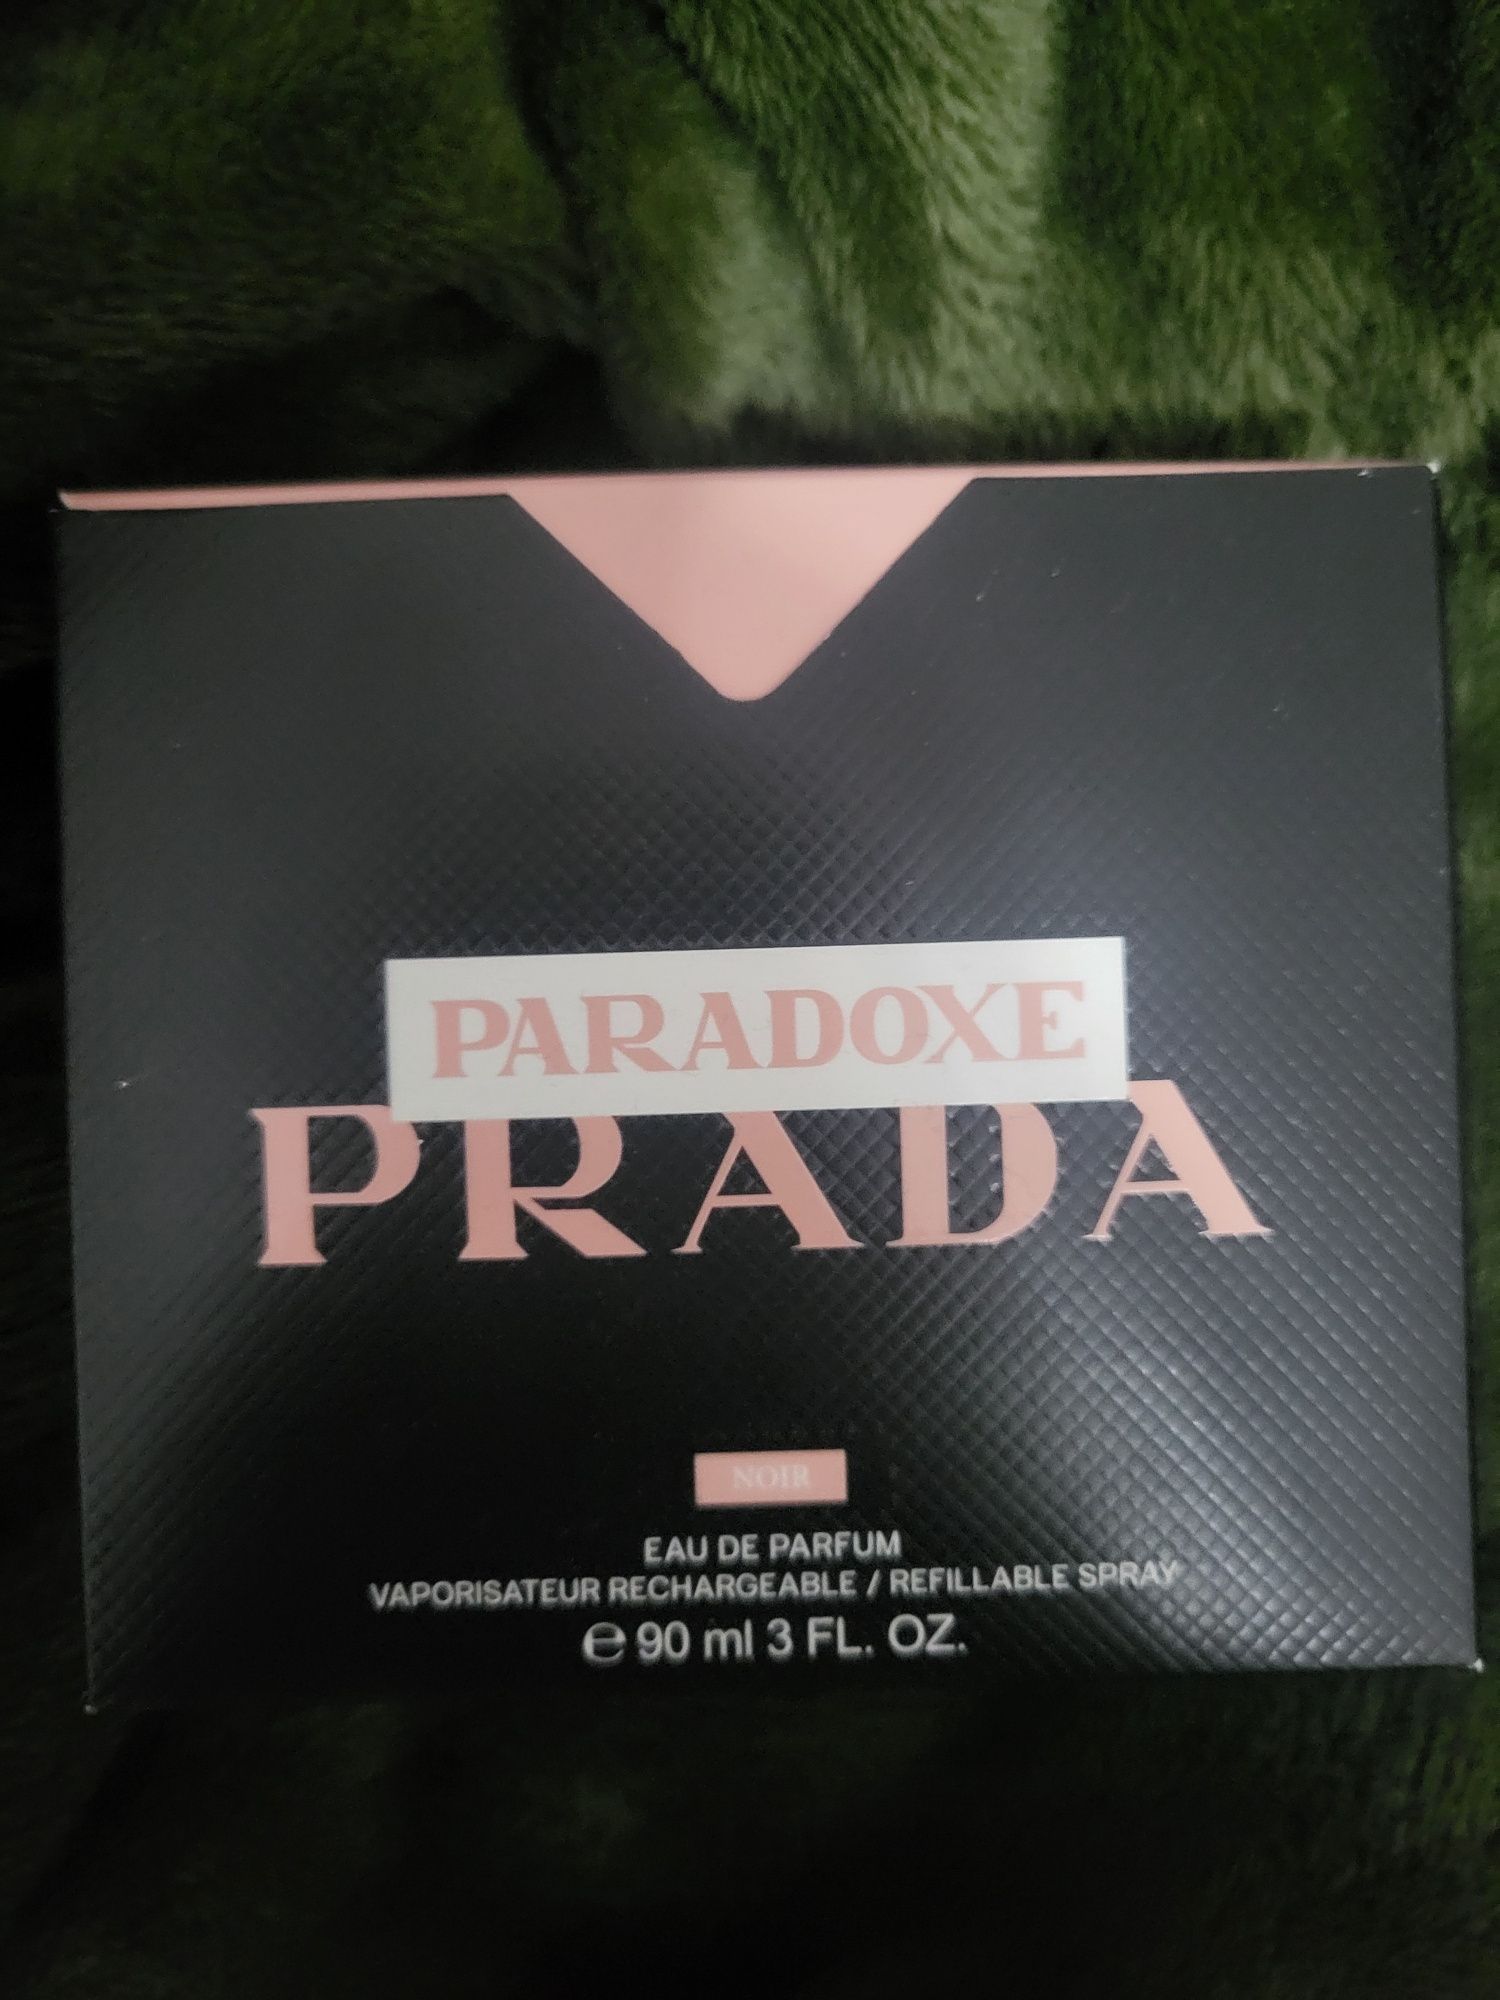 Vând parfum de lux Paradoxe Prada 90 ml.